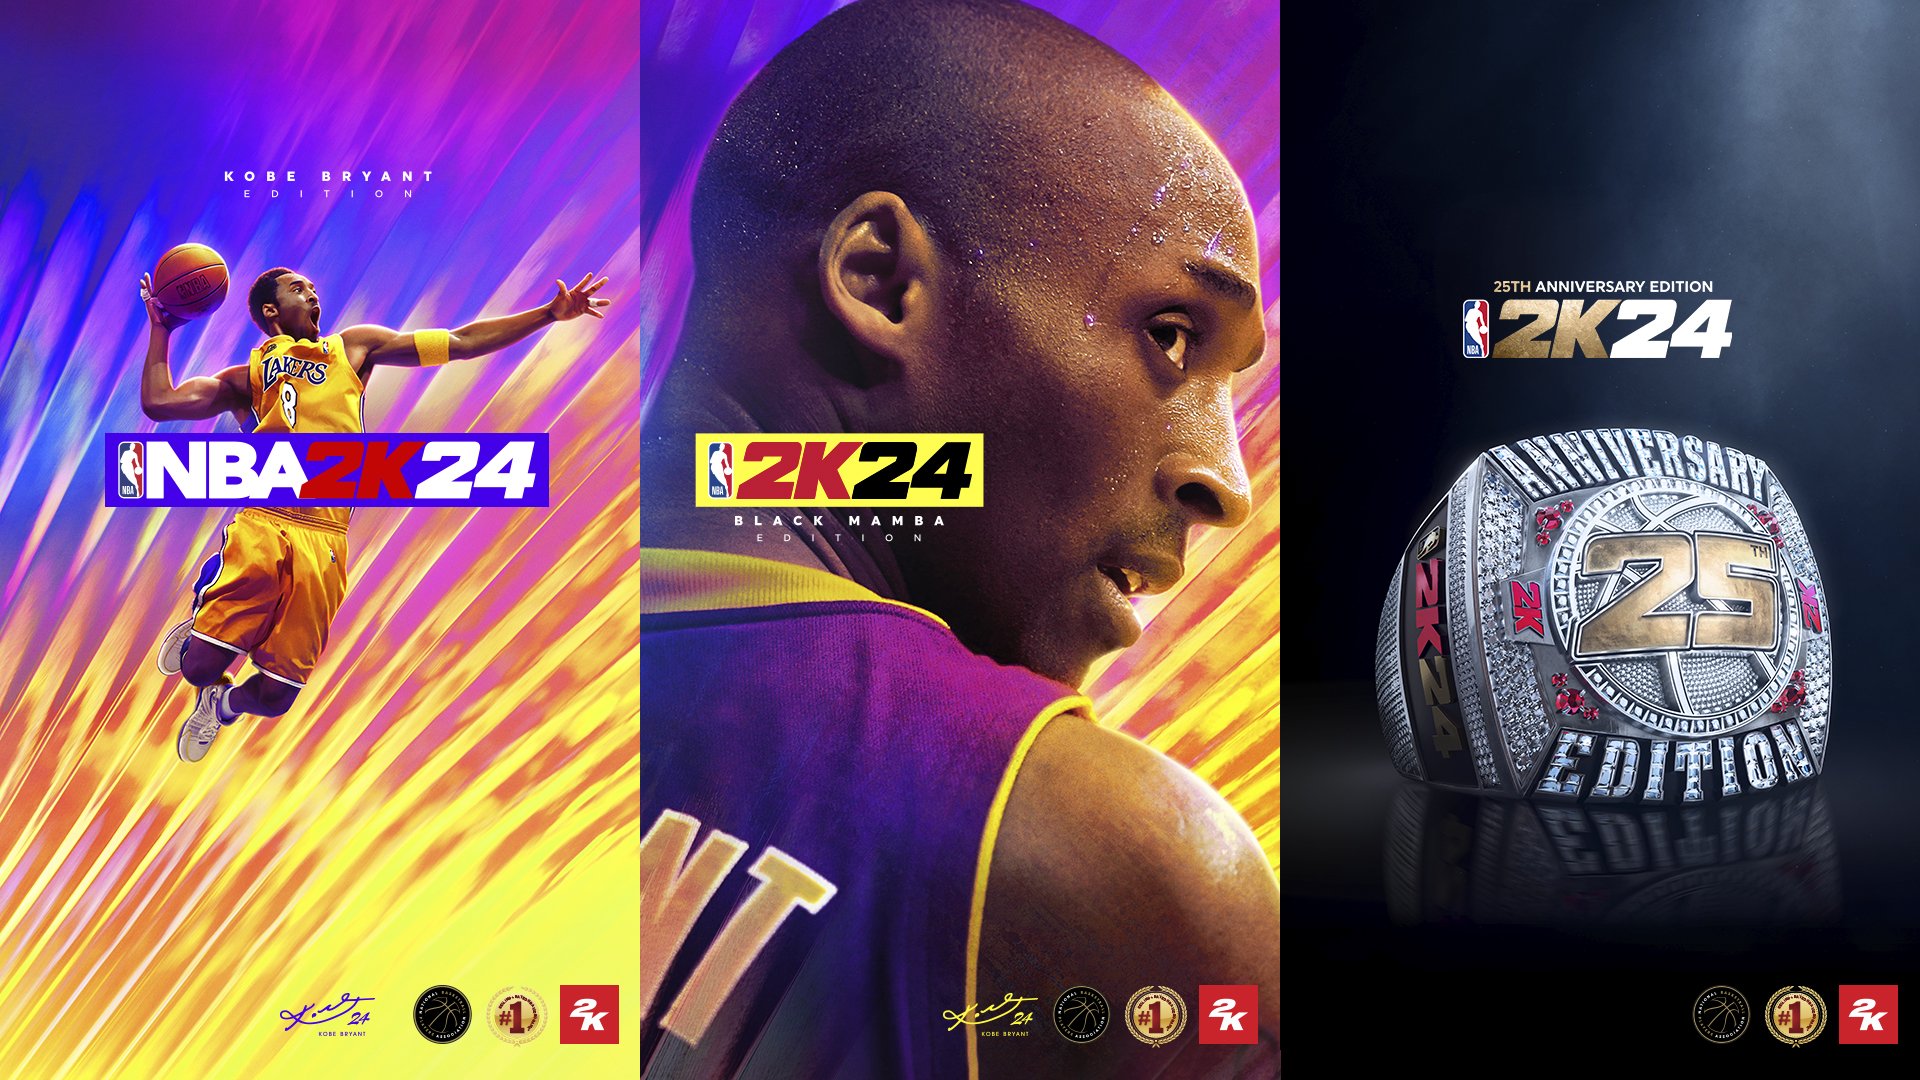 Kobe Bryant, basketball, basquete, black mamba, mamba, nba, HD phone  wallpaper